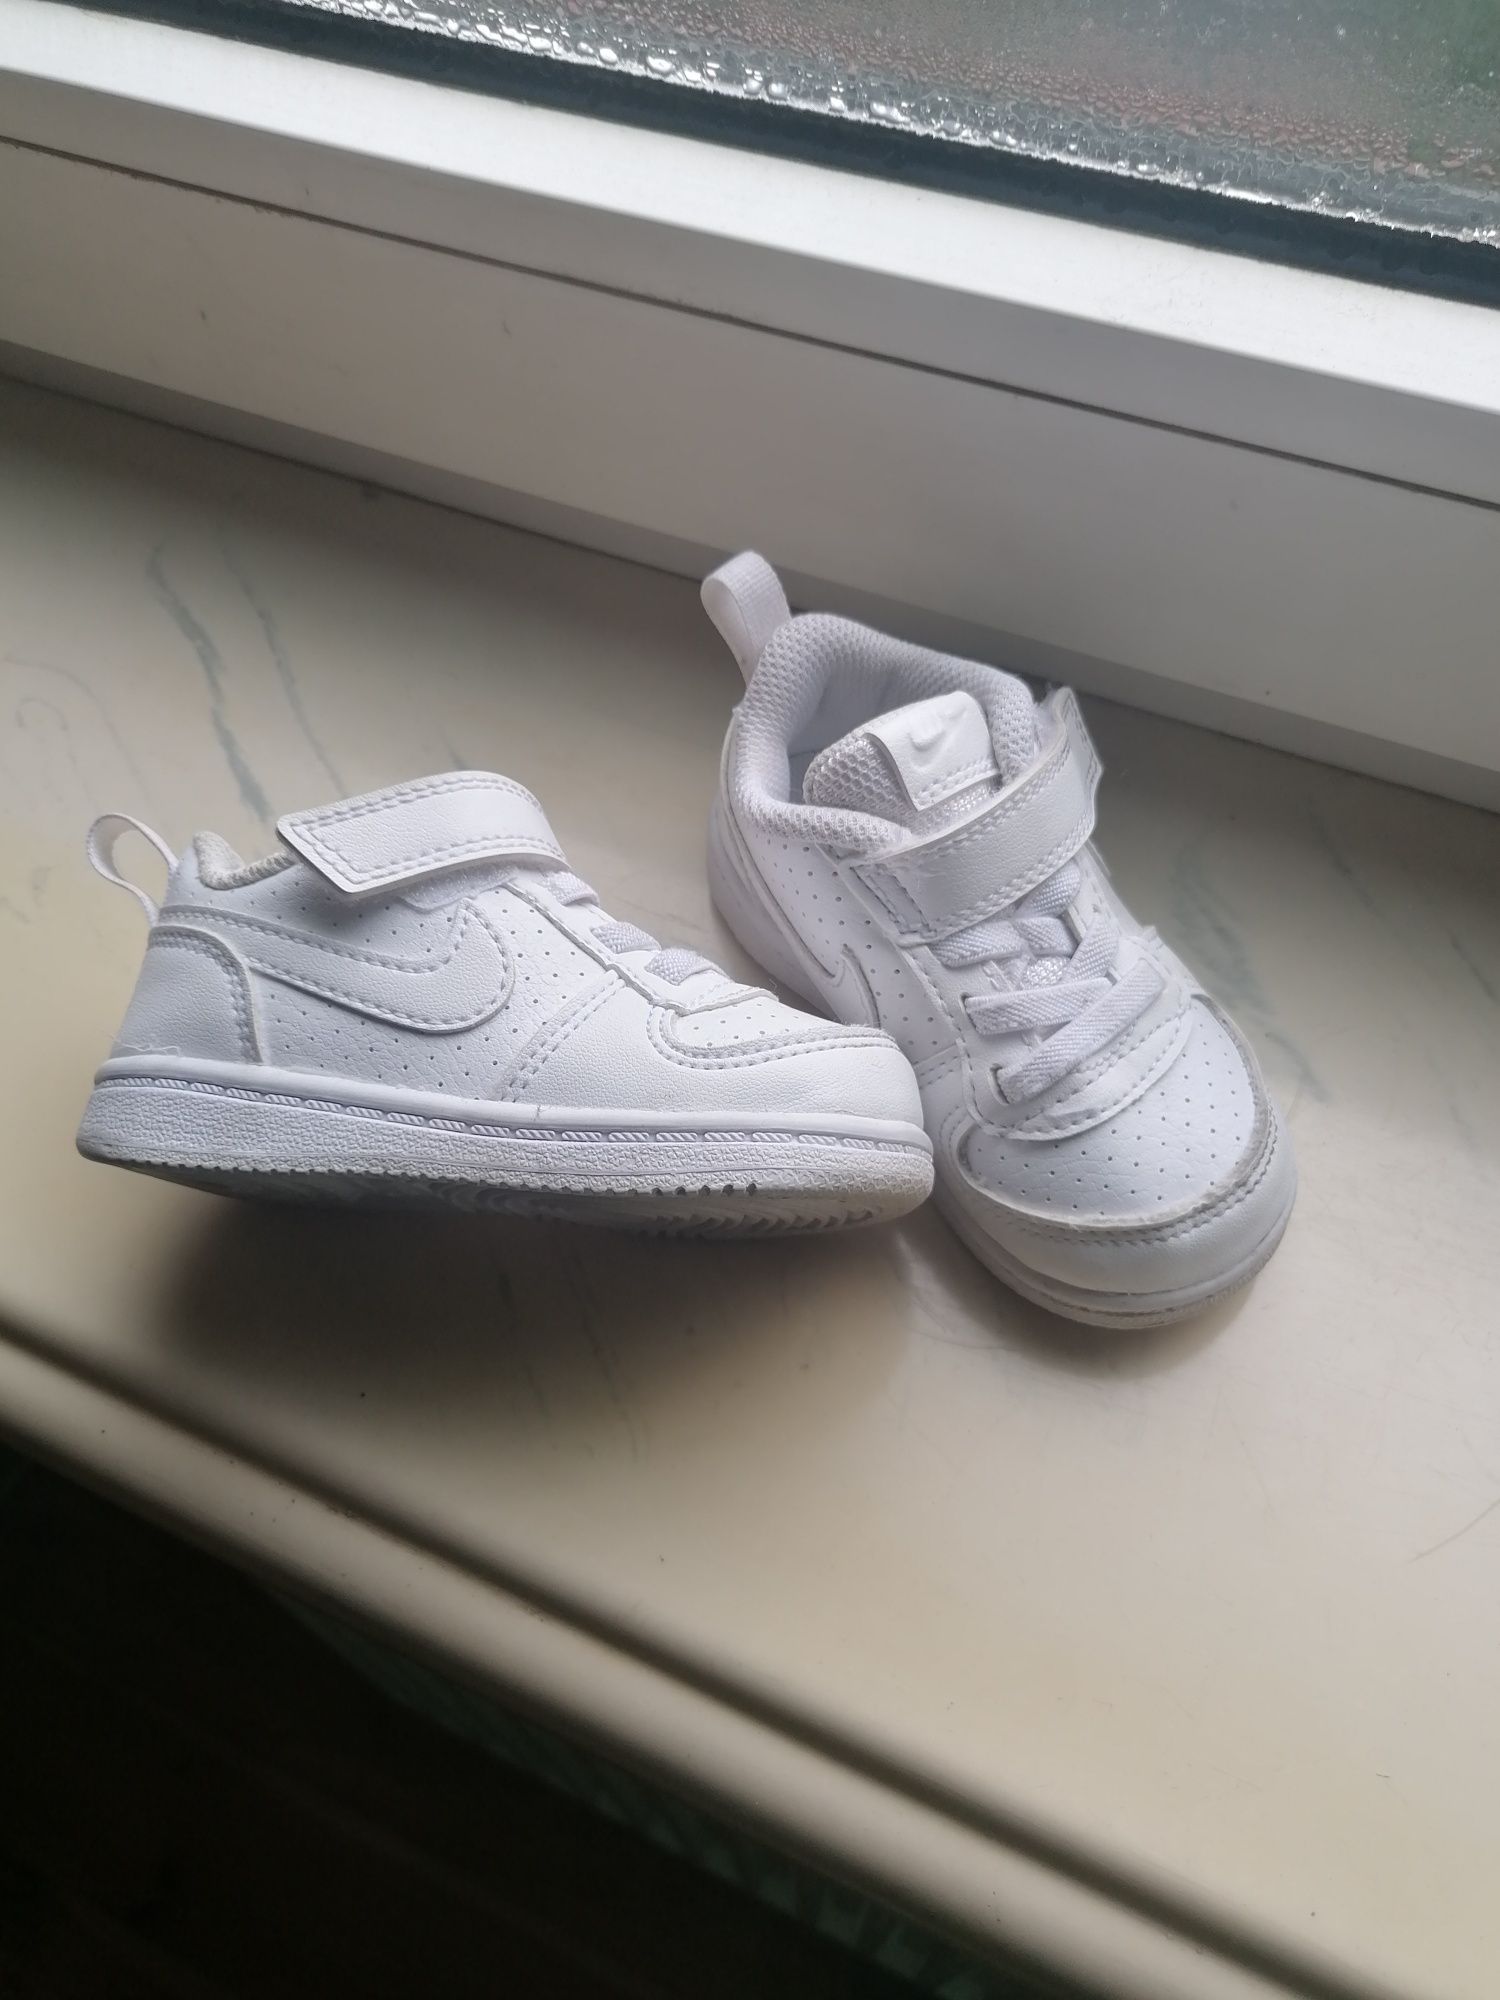 Buty dziecięce Nike 21